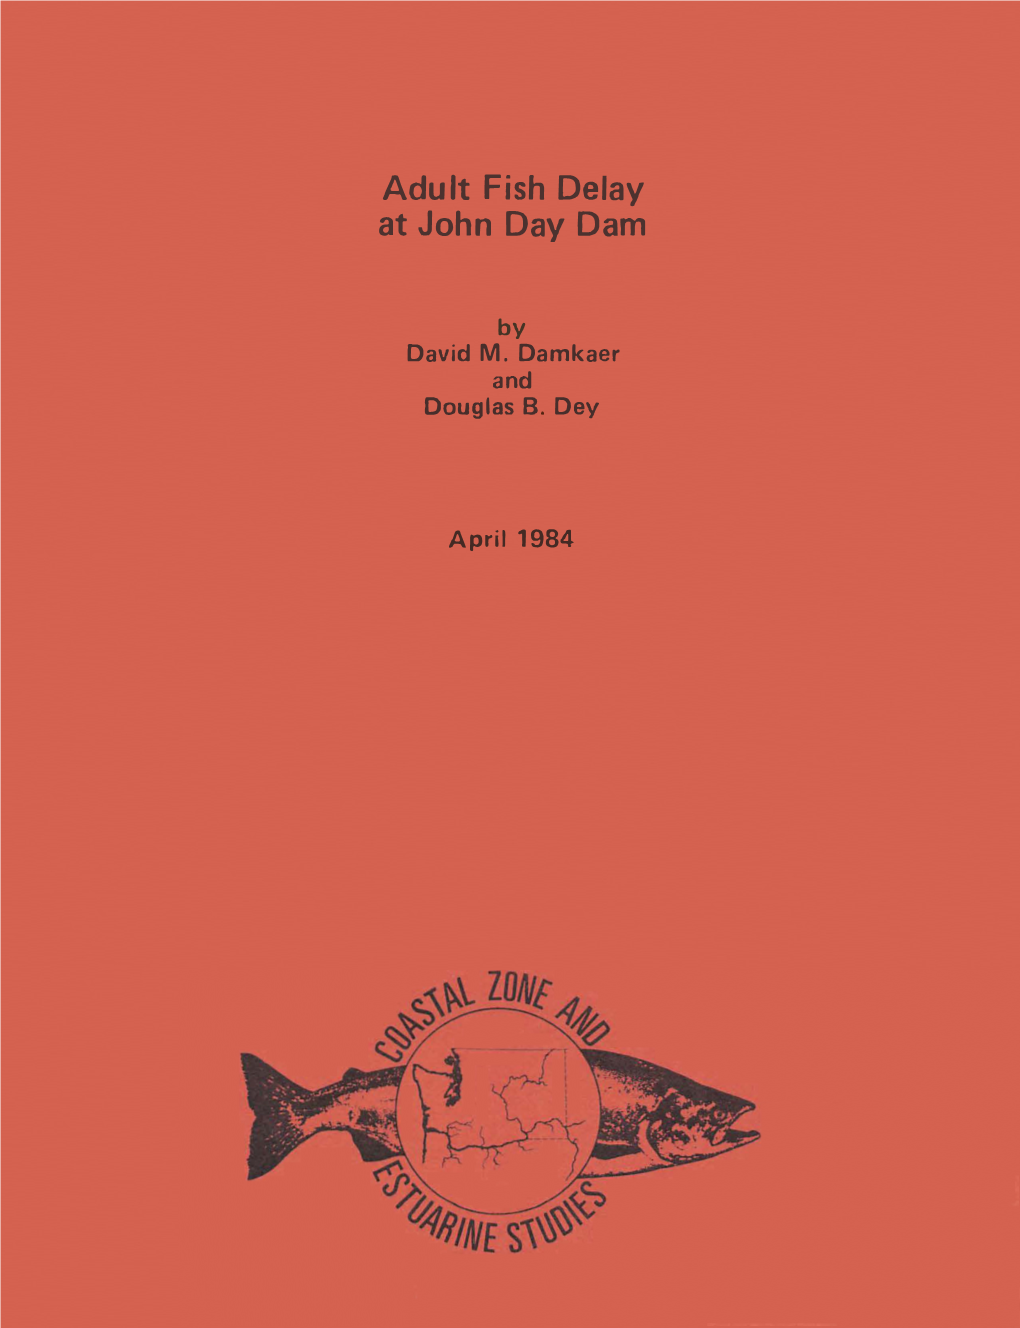 Adult Fish Delay at John Day Dam